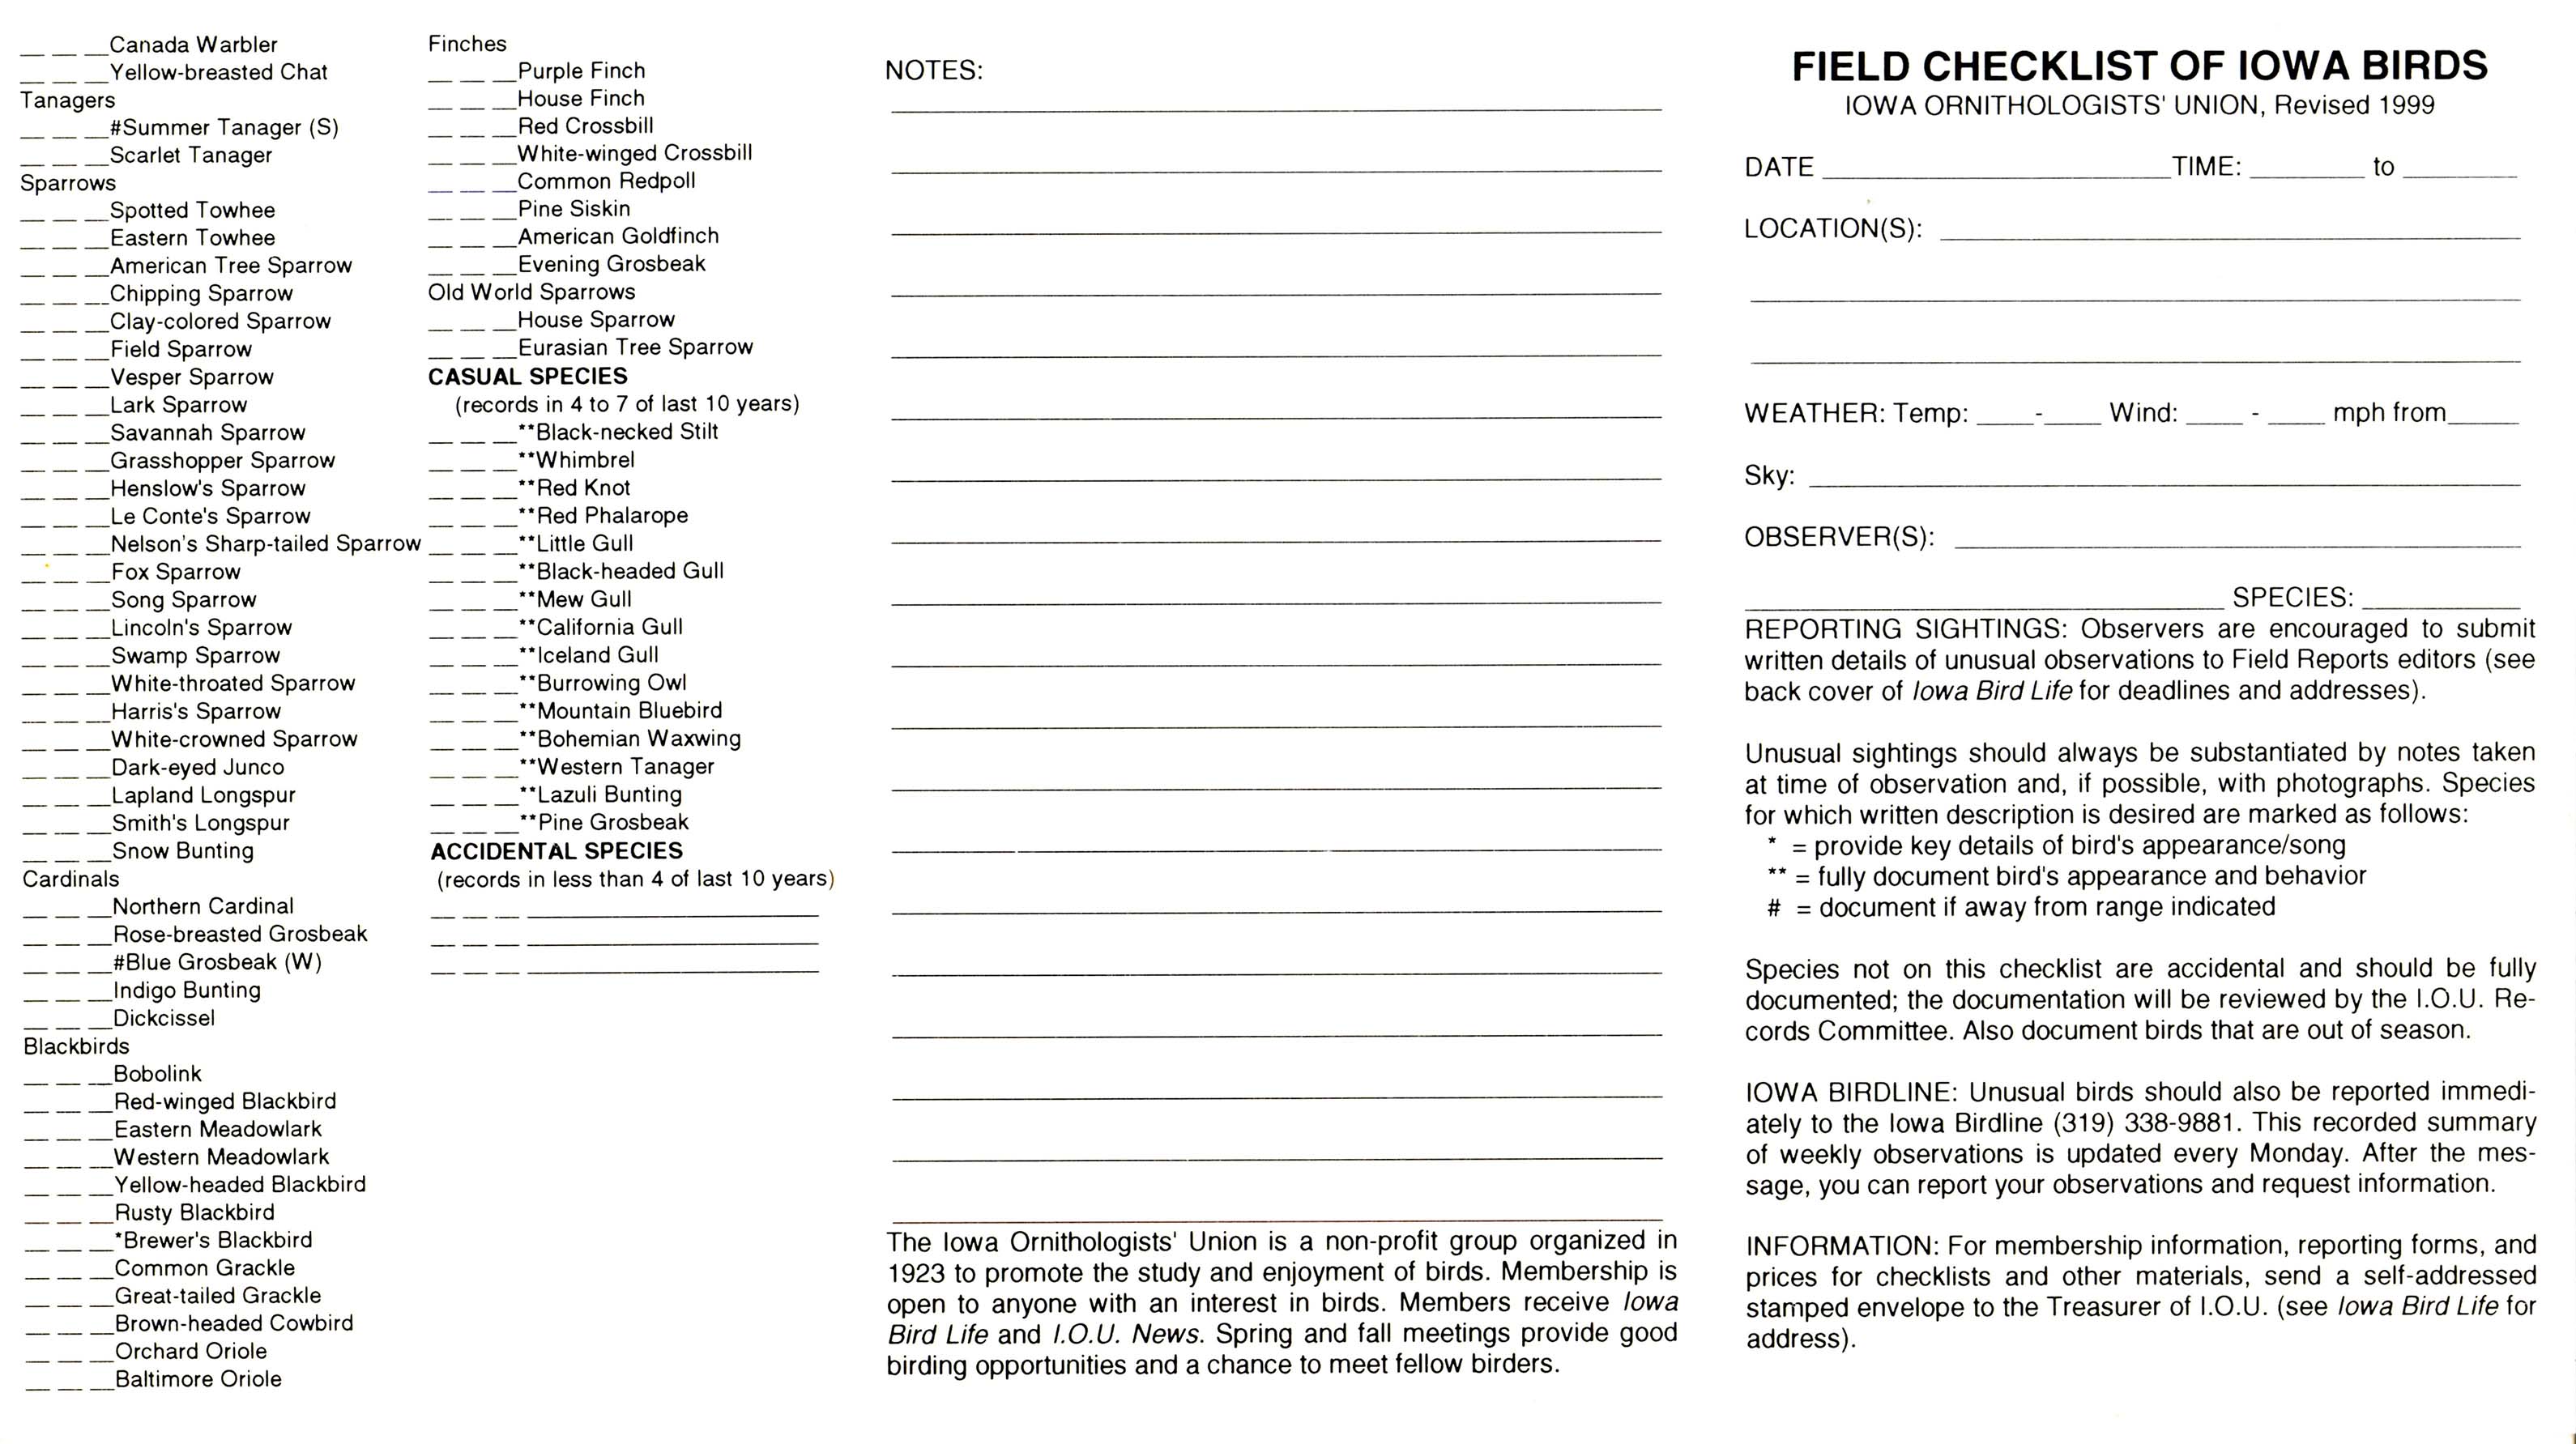 Field checklist of Iowa birds, revised 1999